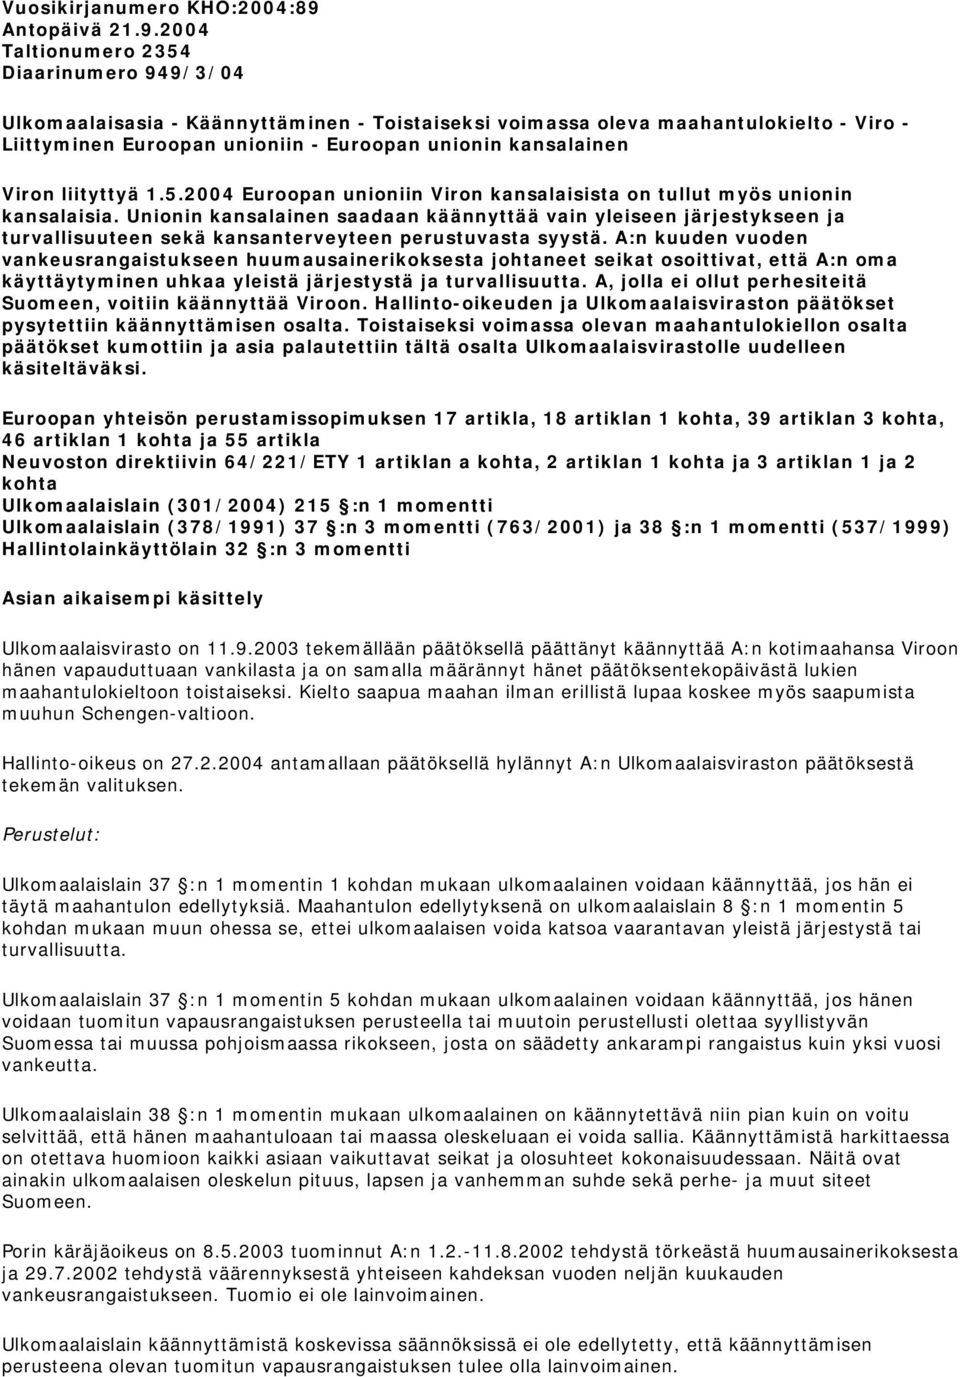 2004 Taltionumero 2354 Diaarinumero 949/3/04 Ulkomaalaisasia - Käännyttäminen - Toistaiseksi voimassa oleva maahantulokielto - Viro - Liittyminen Euroopan unioniin - Euroopan unionin kansalainen